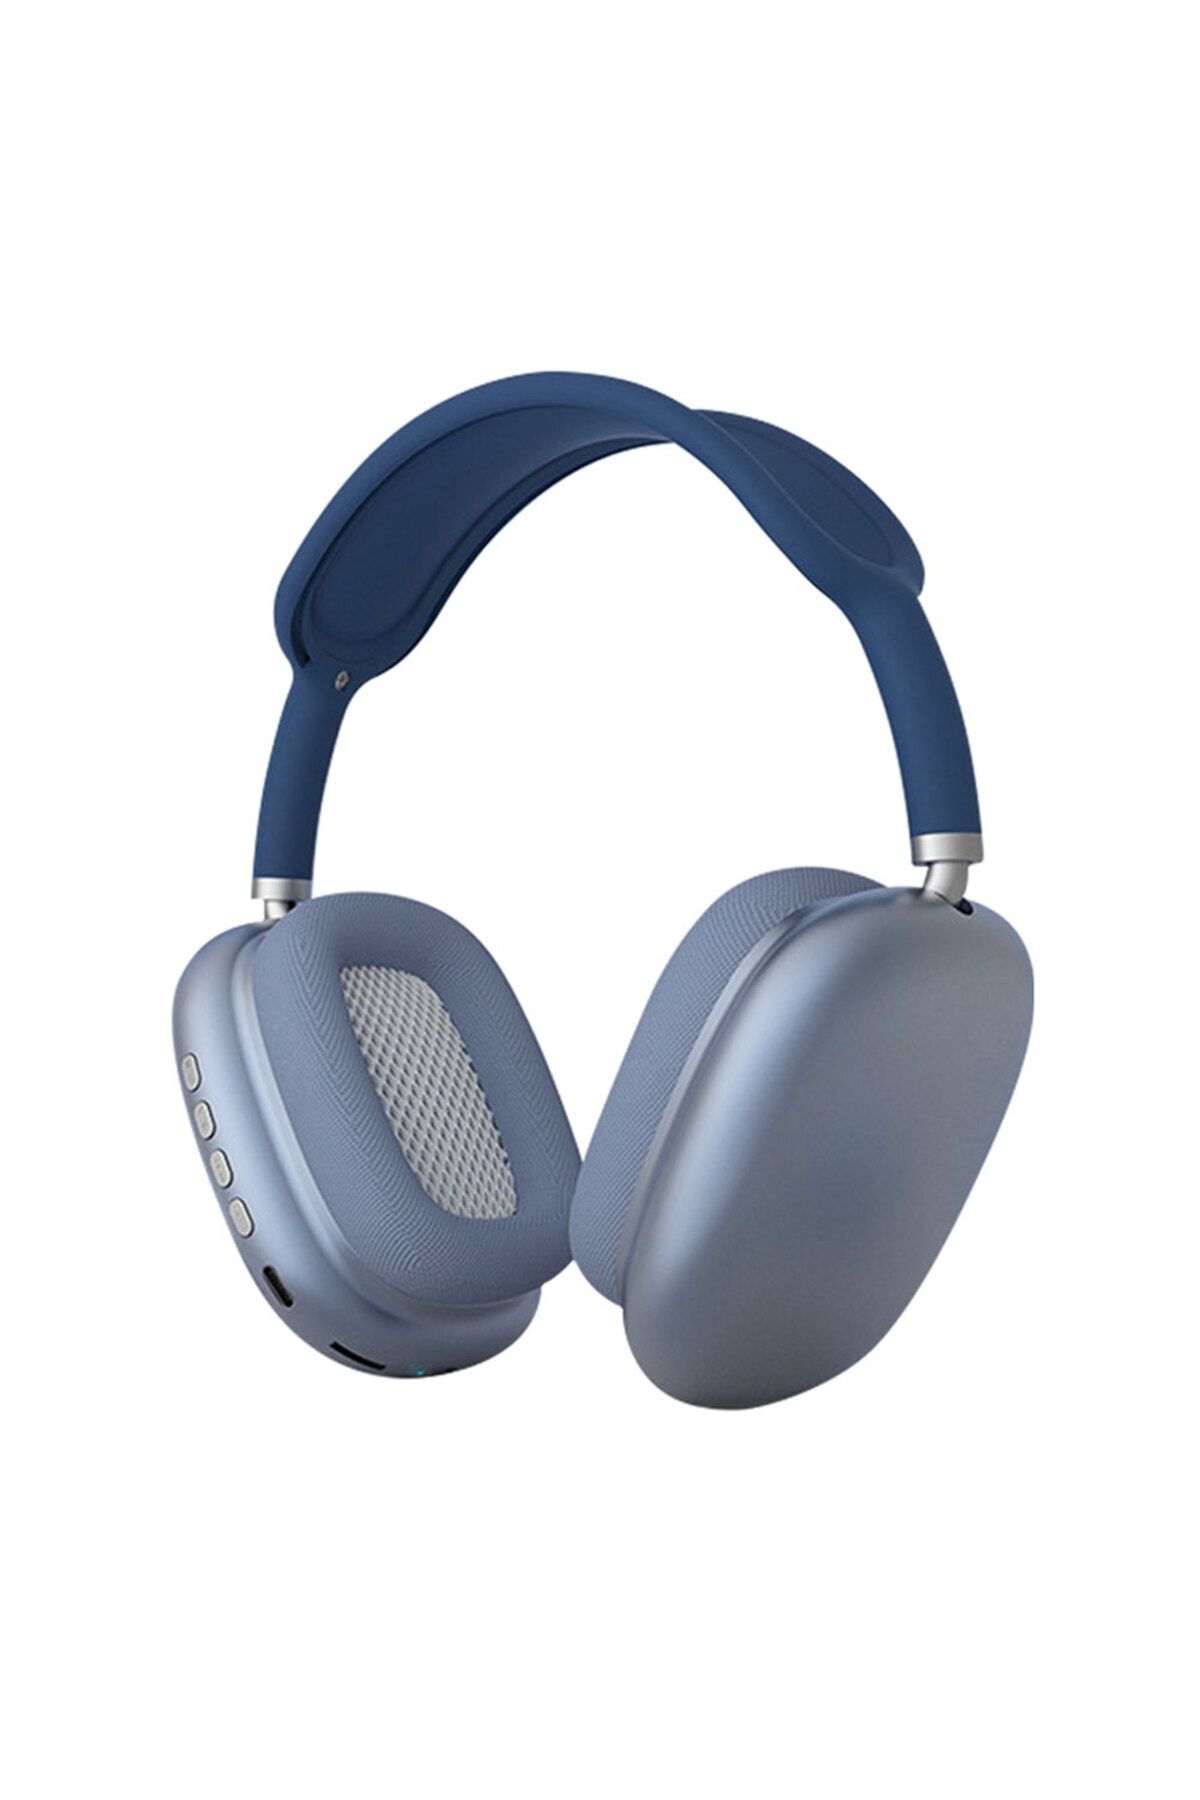 Fibaks P9 Hi-fi Ses Kalitesi Ayarlanabilir Ve Katlanabilir Kafa Üstü uyumlu   Bluetooth Kulaklık